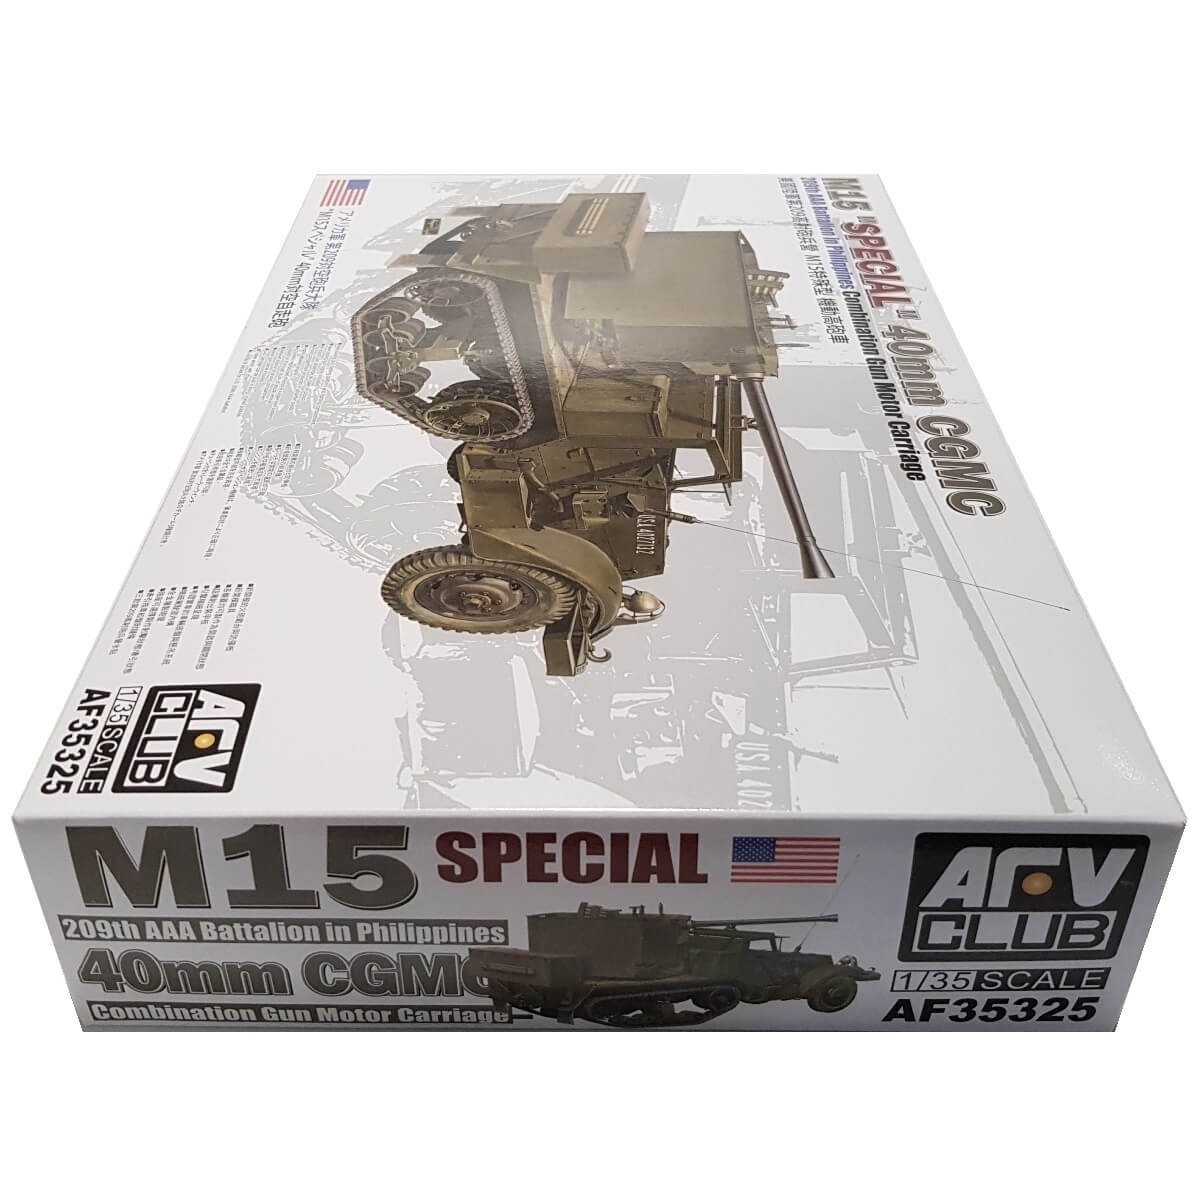 1:35 M15 SPECIAL 40mm CGMC - AFV CLUB